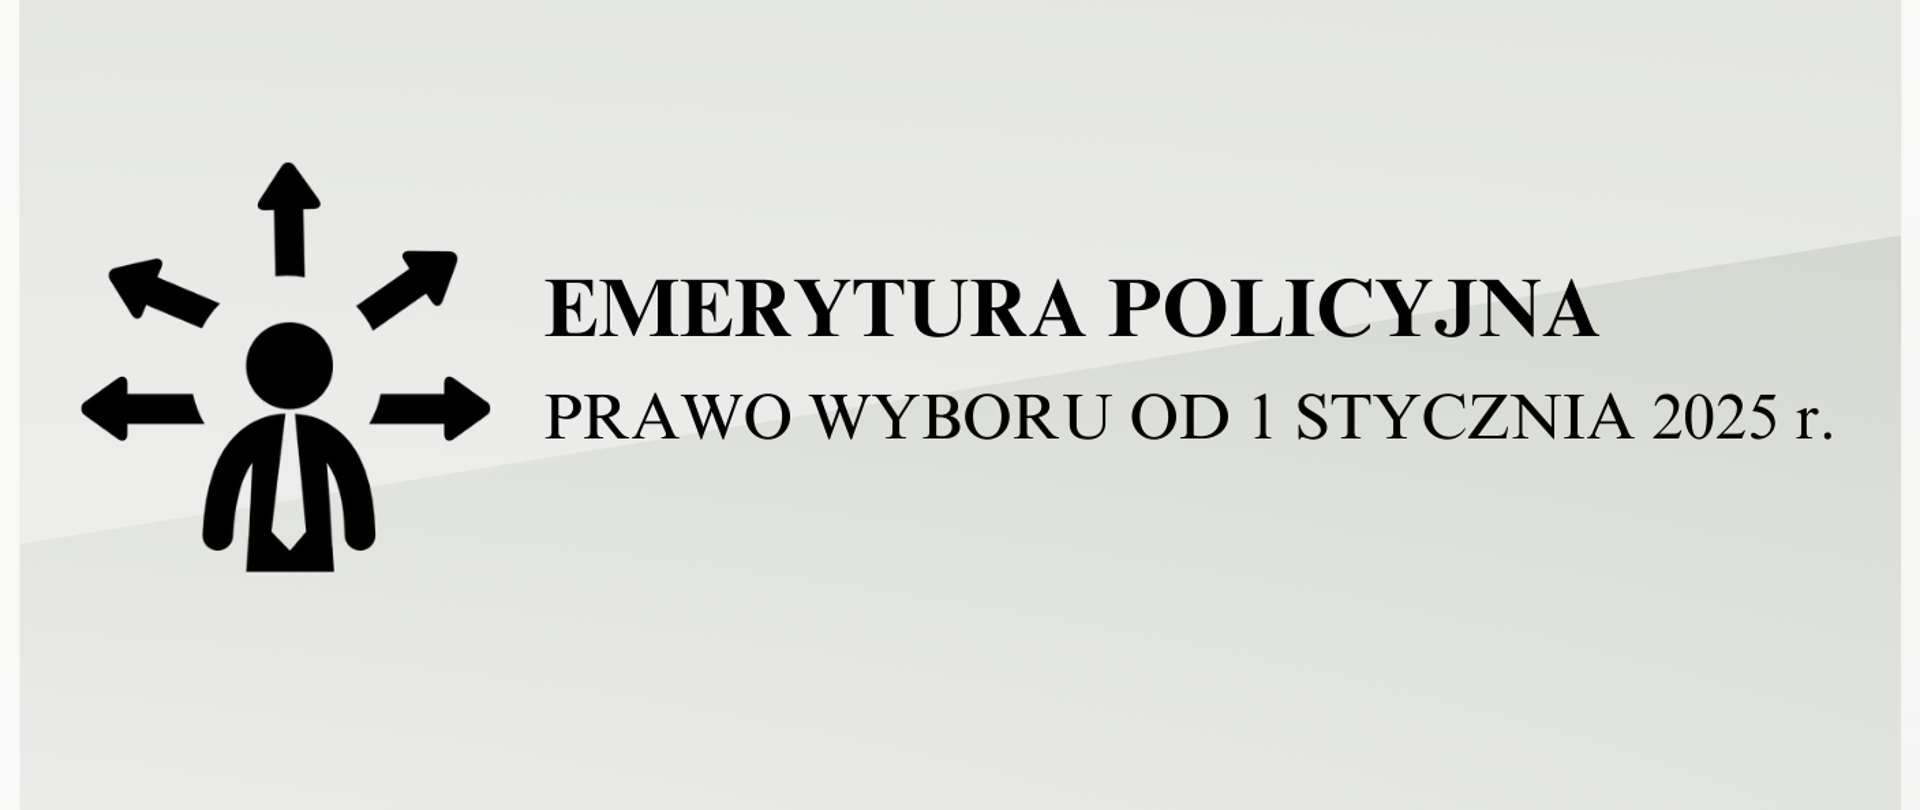 Emerytura policyjna prawo wyboru od 1 stycznia 2025 r.